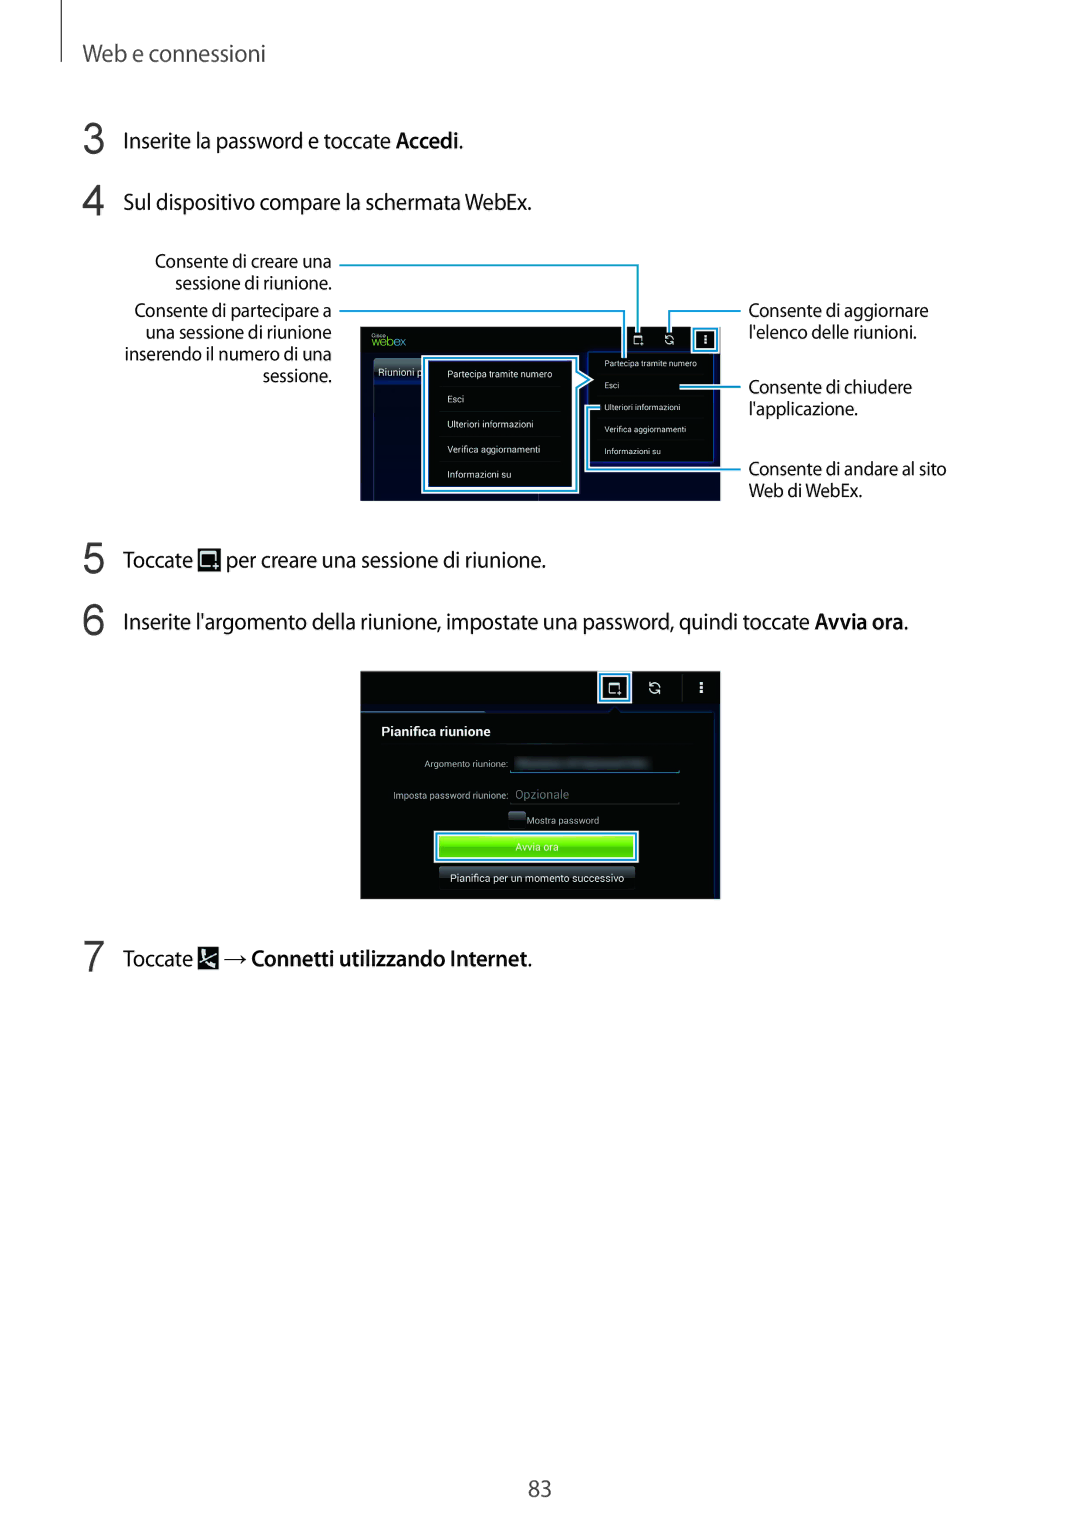 Samsung SM-T325NZWAXEO, SM-T325NZWADBT manual Inserite la password e toccate Accedi, Toccate →Connetti utilizzando Internet 